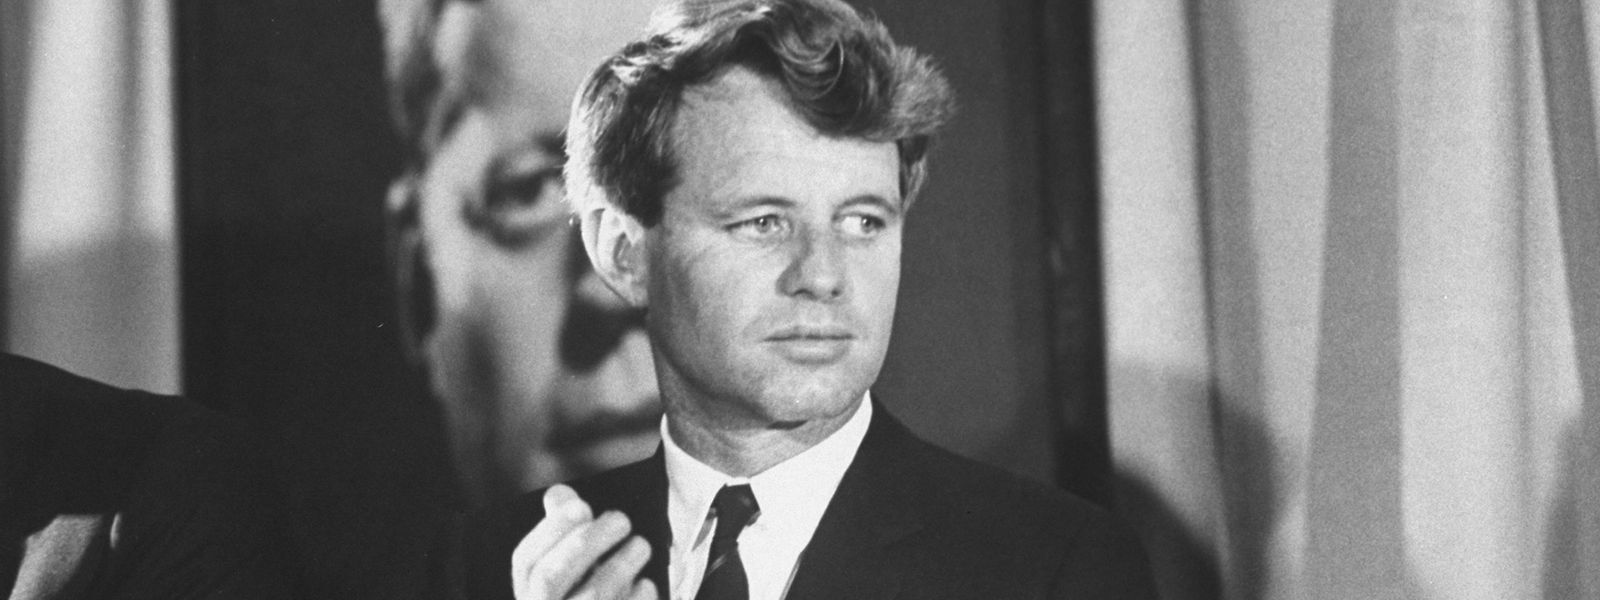 Nach dem Tod seines Bruders wurde Bobby Kennedy für viele Amerikaner zum Hoffnungsträger.